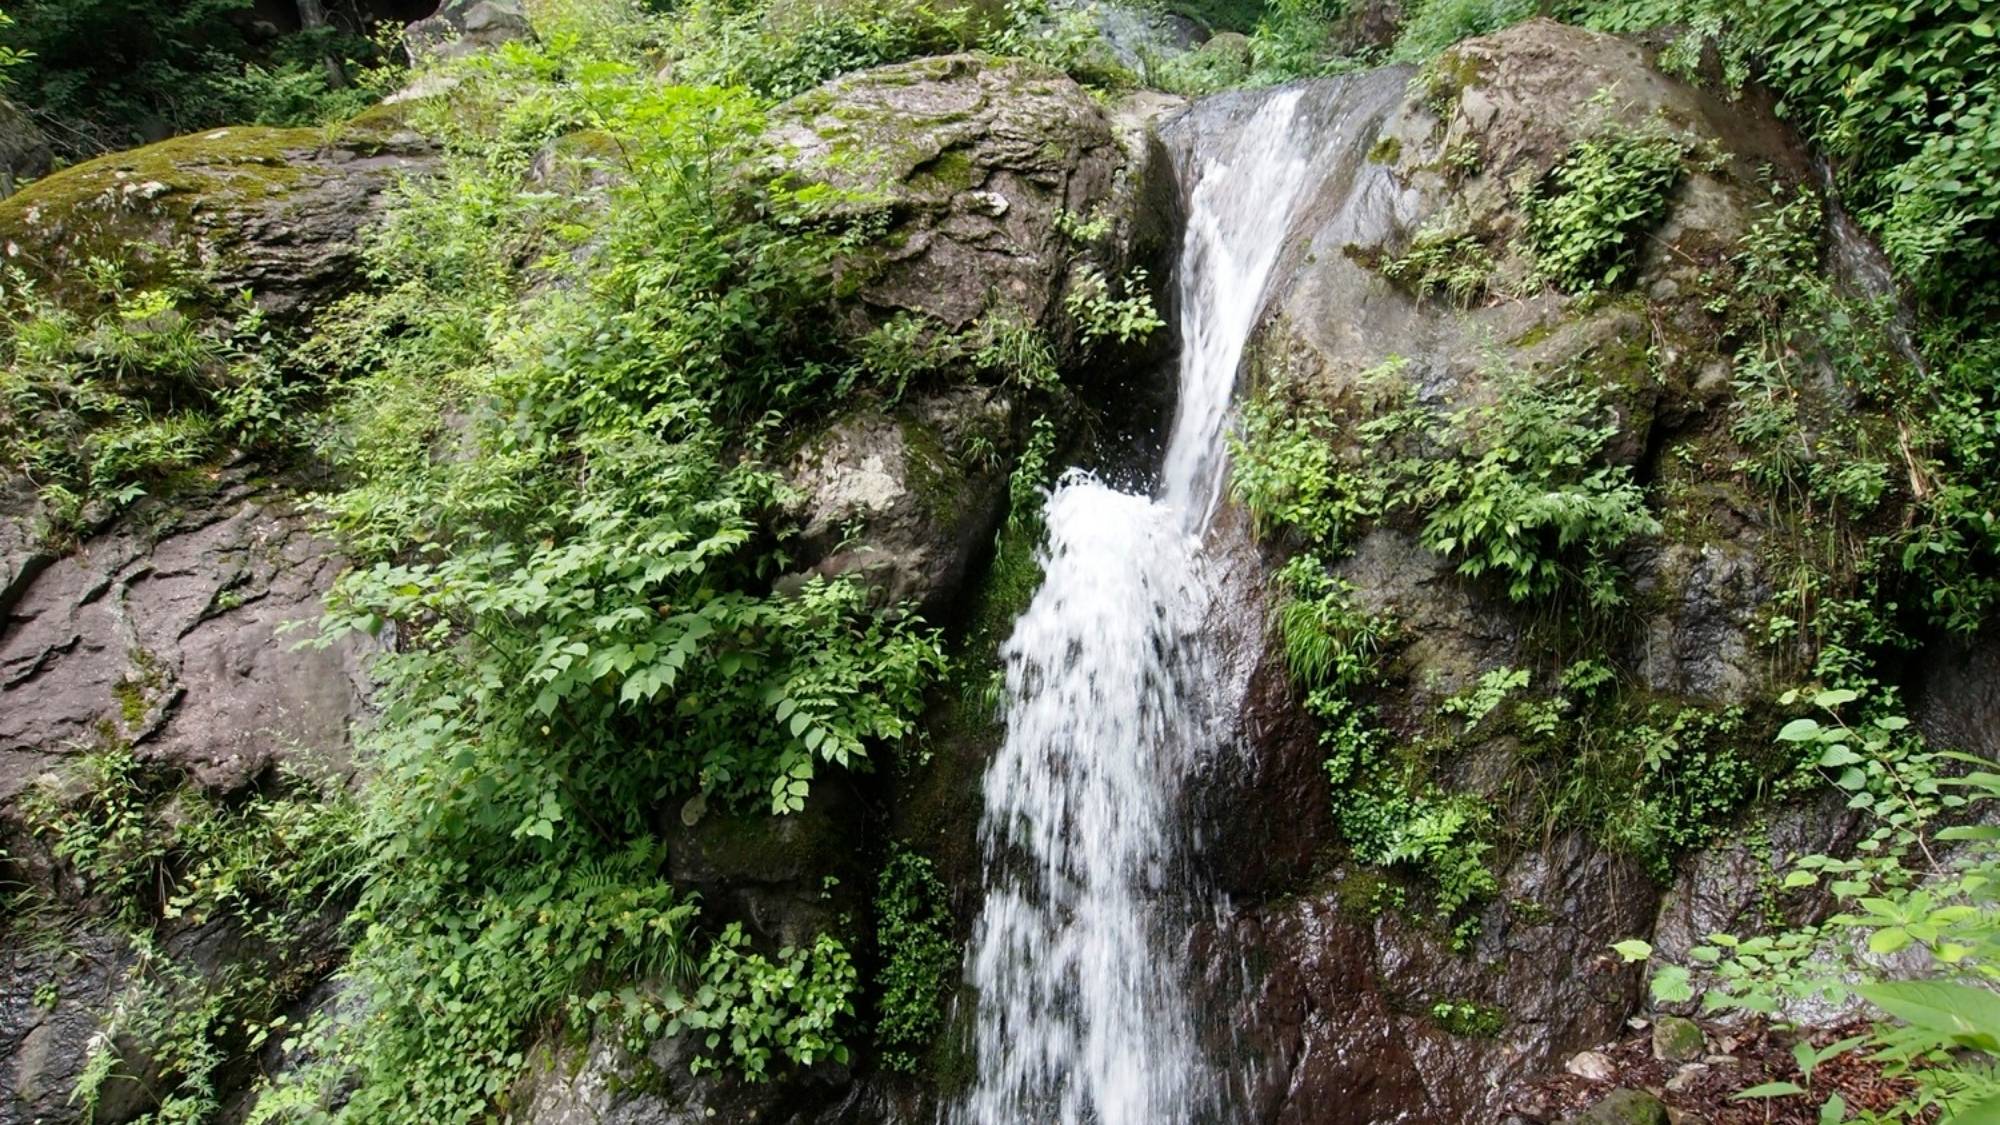 乙女の滝。滝が非常に特異な形をしていて、「ヒョングリ滝(跳ね滝)」と呼ばれています。